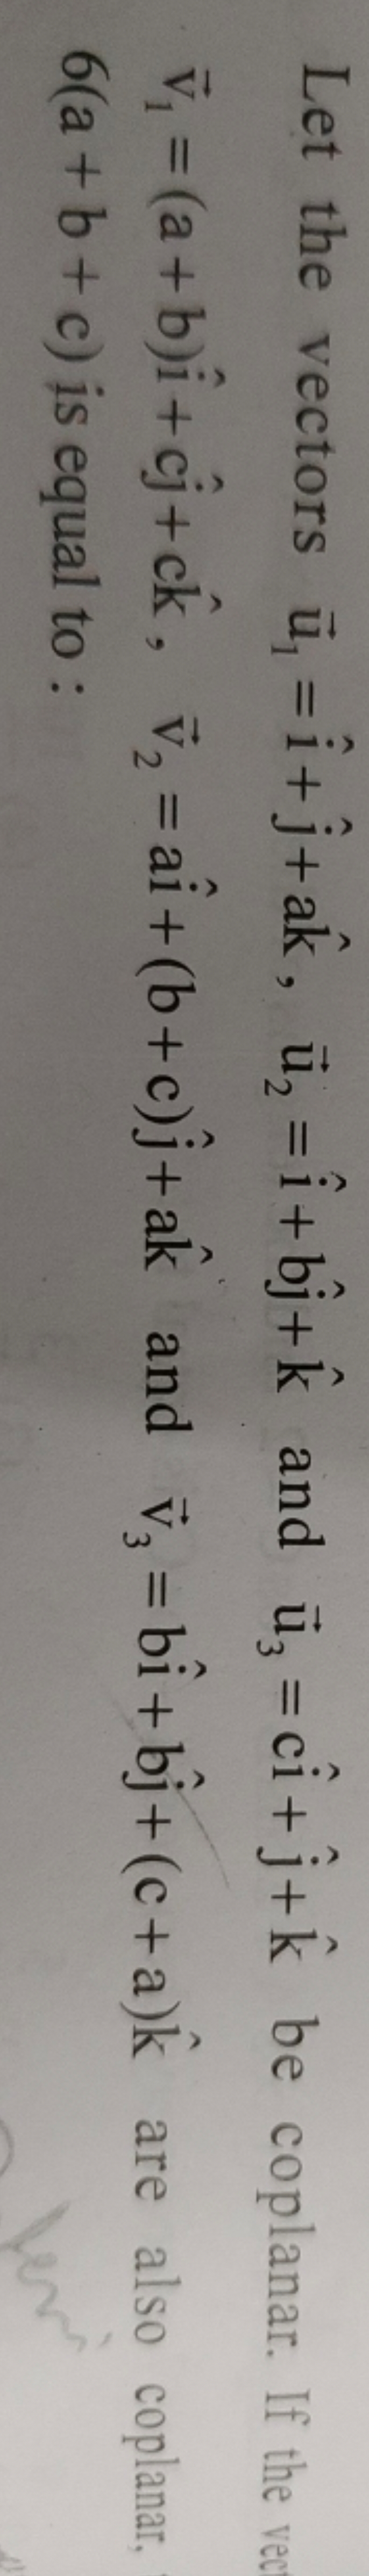 Let the vectors u1​=i^+j^​+ak^,u2​=i^+bj^​+k^ and u3​=ci^+j^​+k^ be co